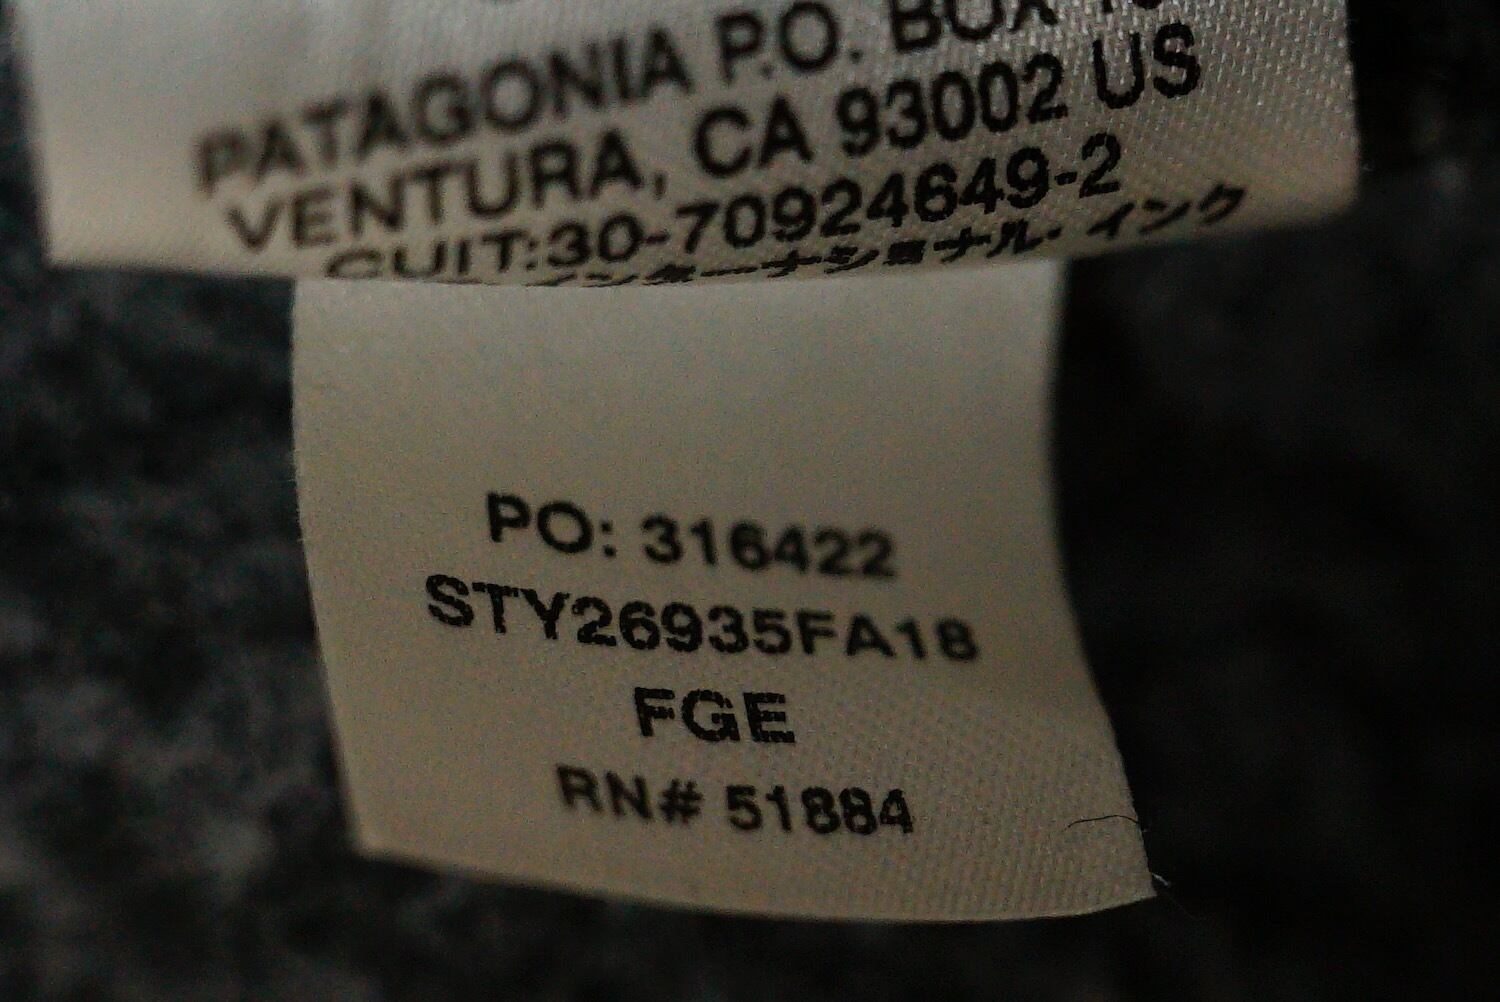 3017 patagonia パタゴニア フリースジャケット 26935FA18 2018年製